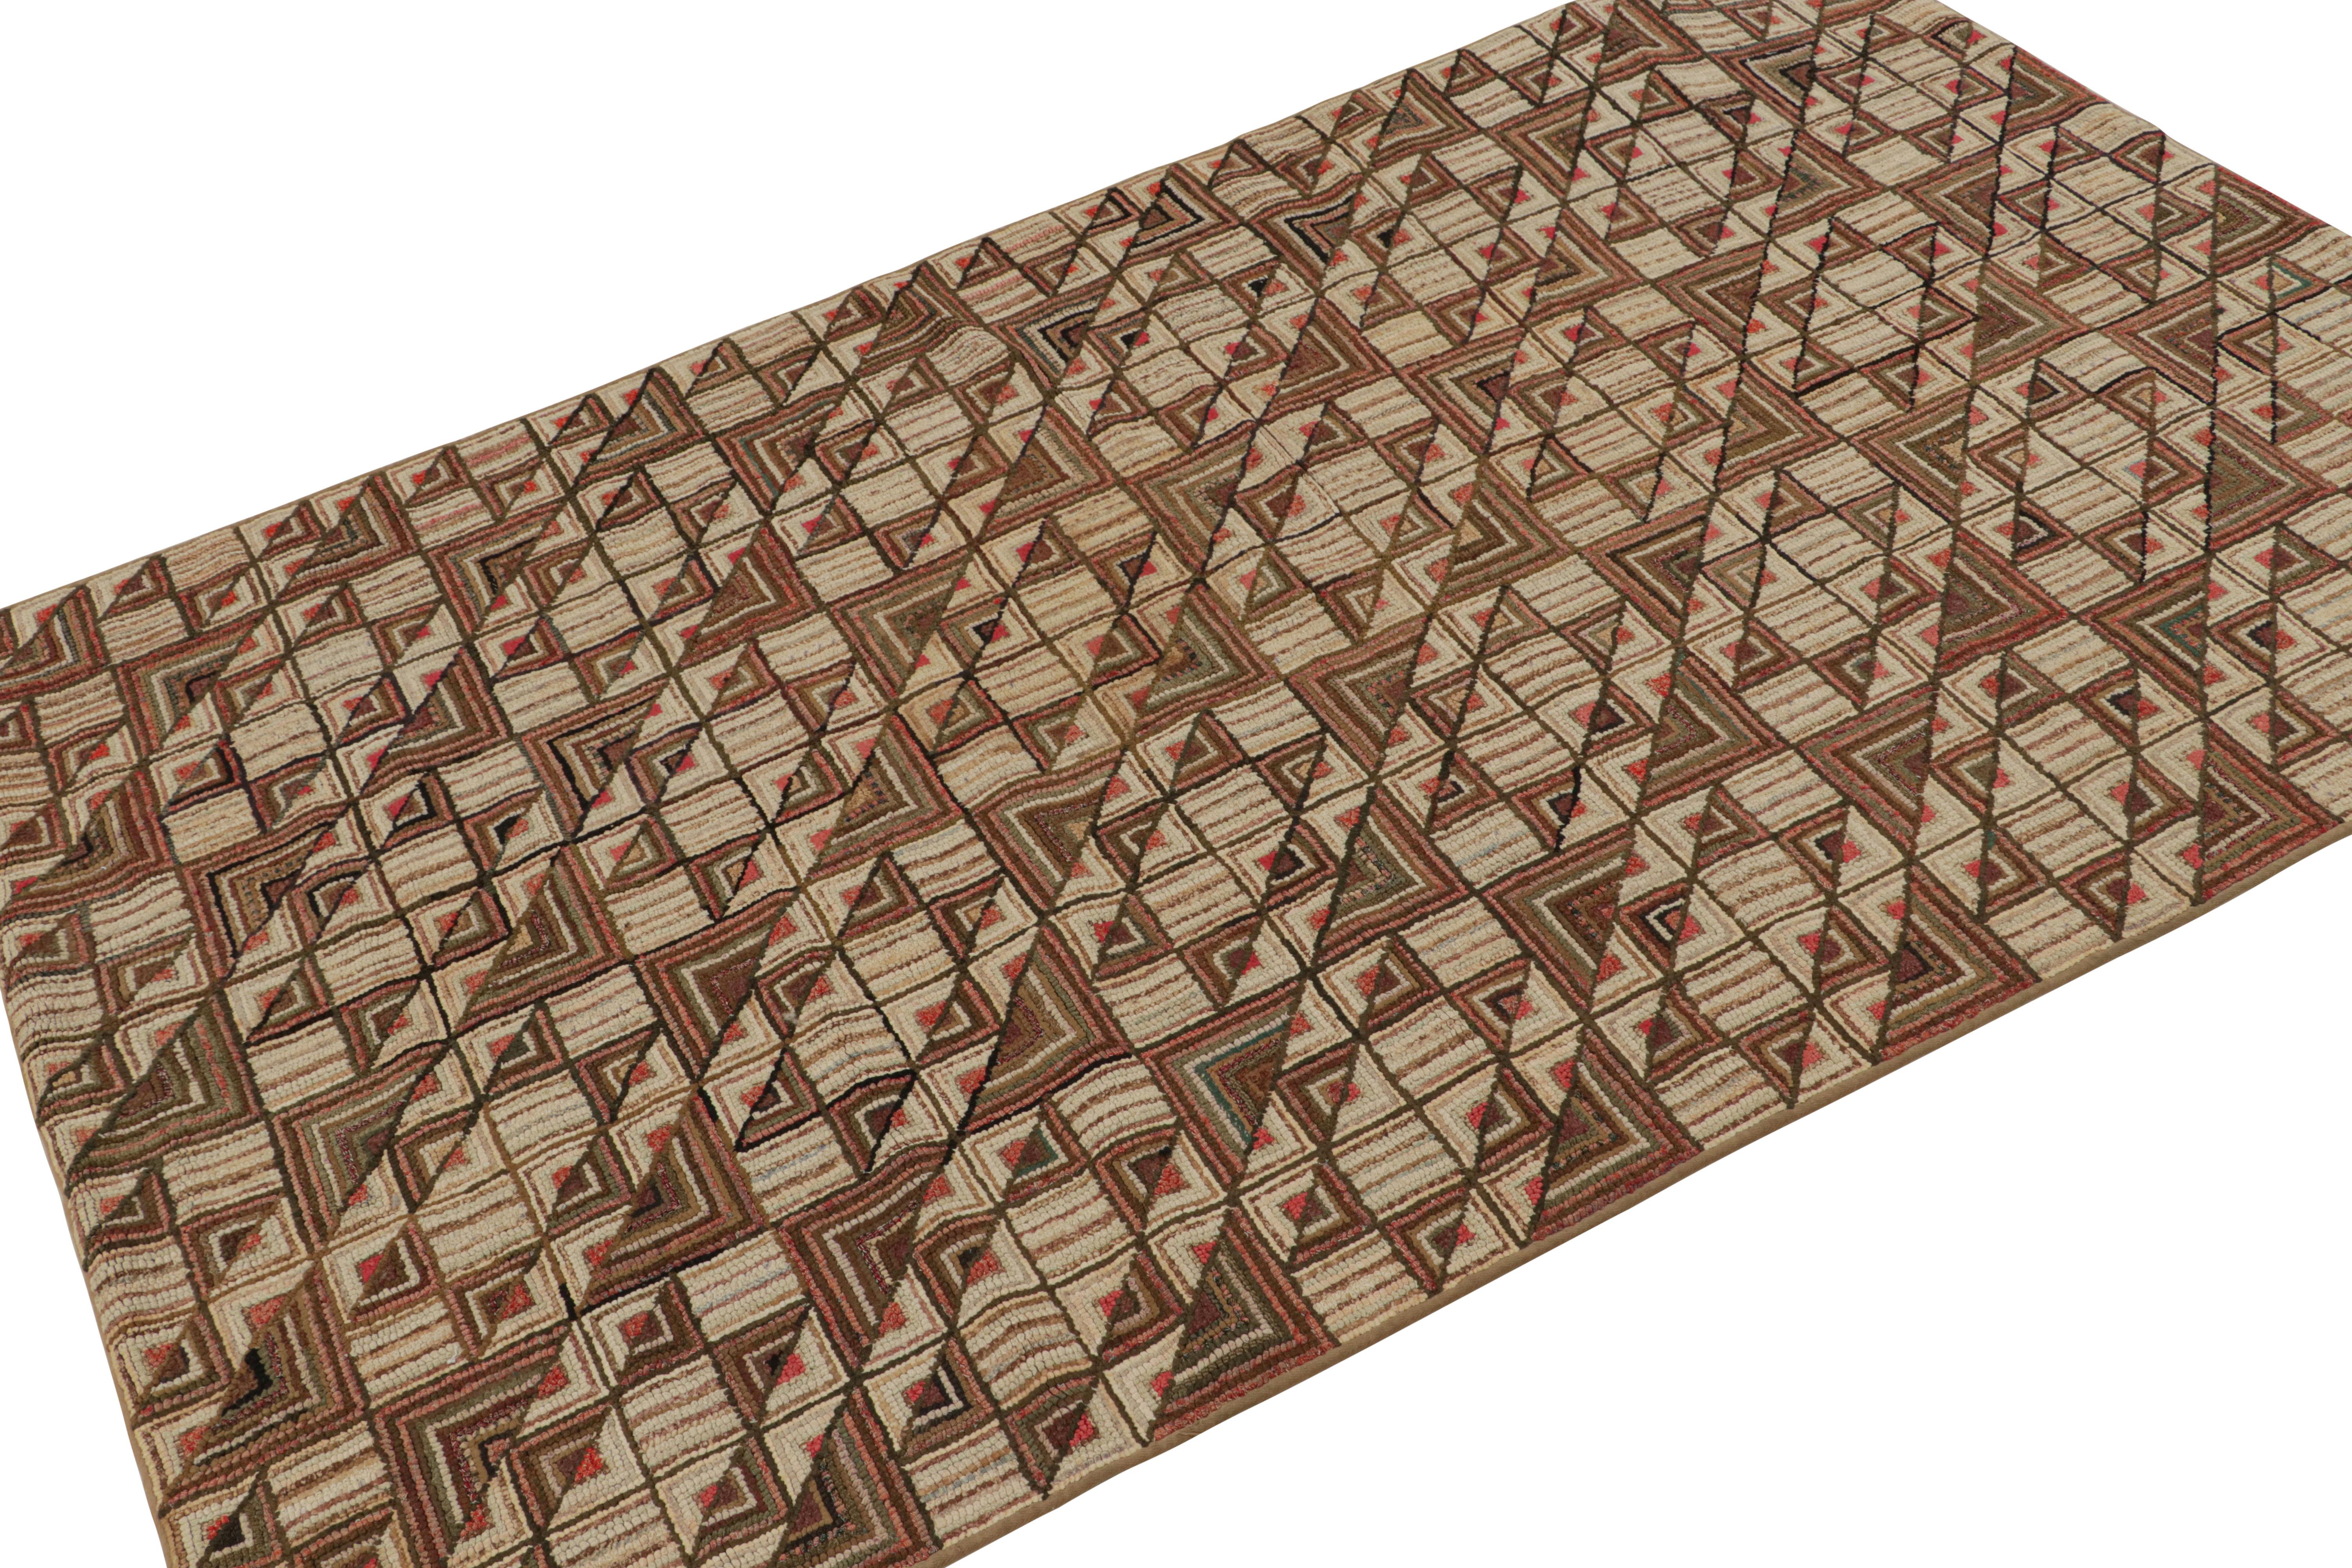 Rare tapis crocheté antique 4x7 de provenance américaine, fait à la main en laine et en tissu vers 1920-1930, présentant des motifs géométriques répétitifs. 

Sur le Design : 

Cette pièce de collection bénéficie de motifs géométriques répétitifs